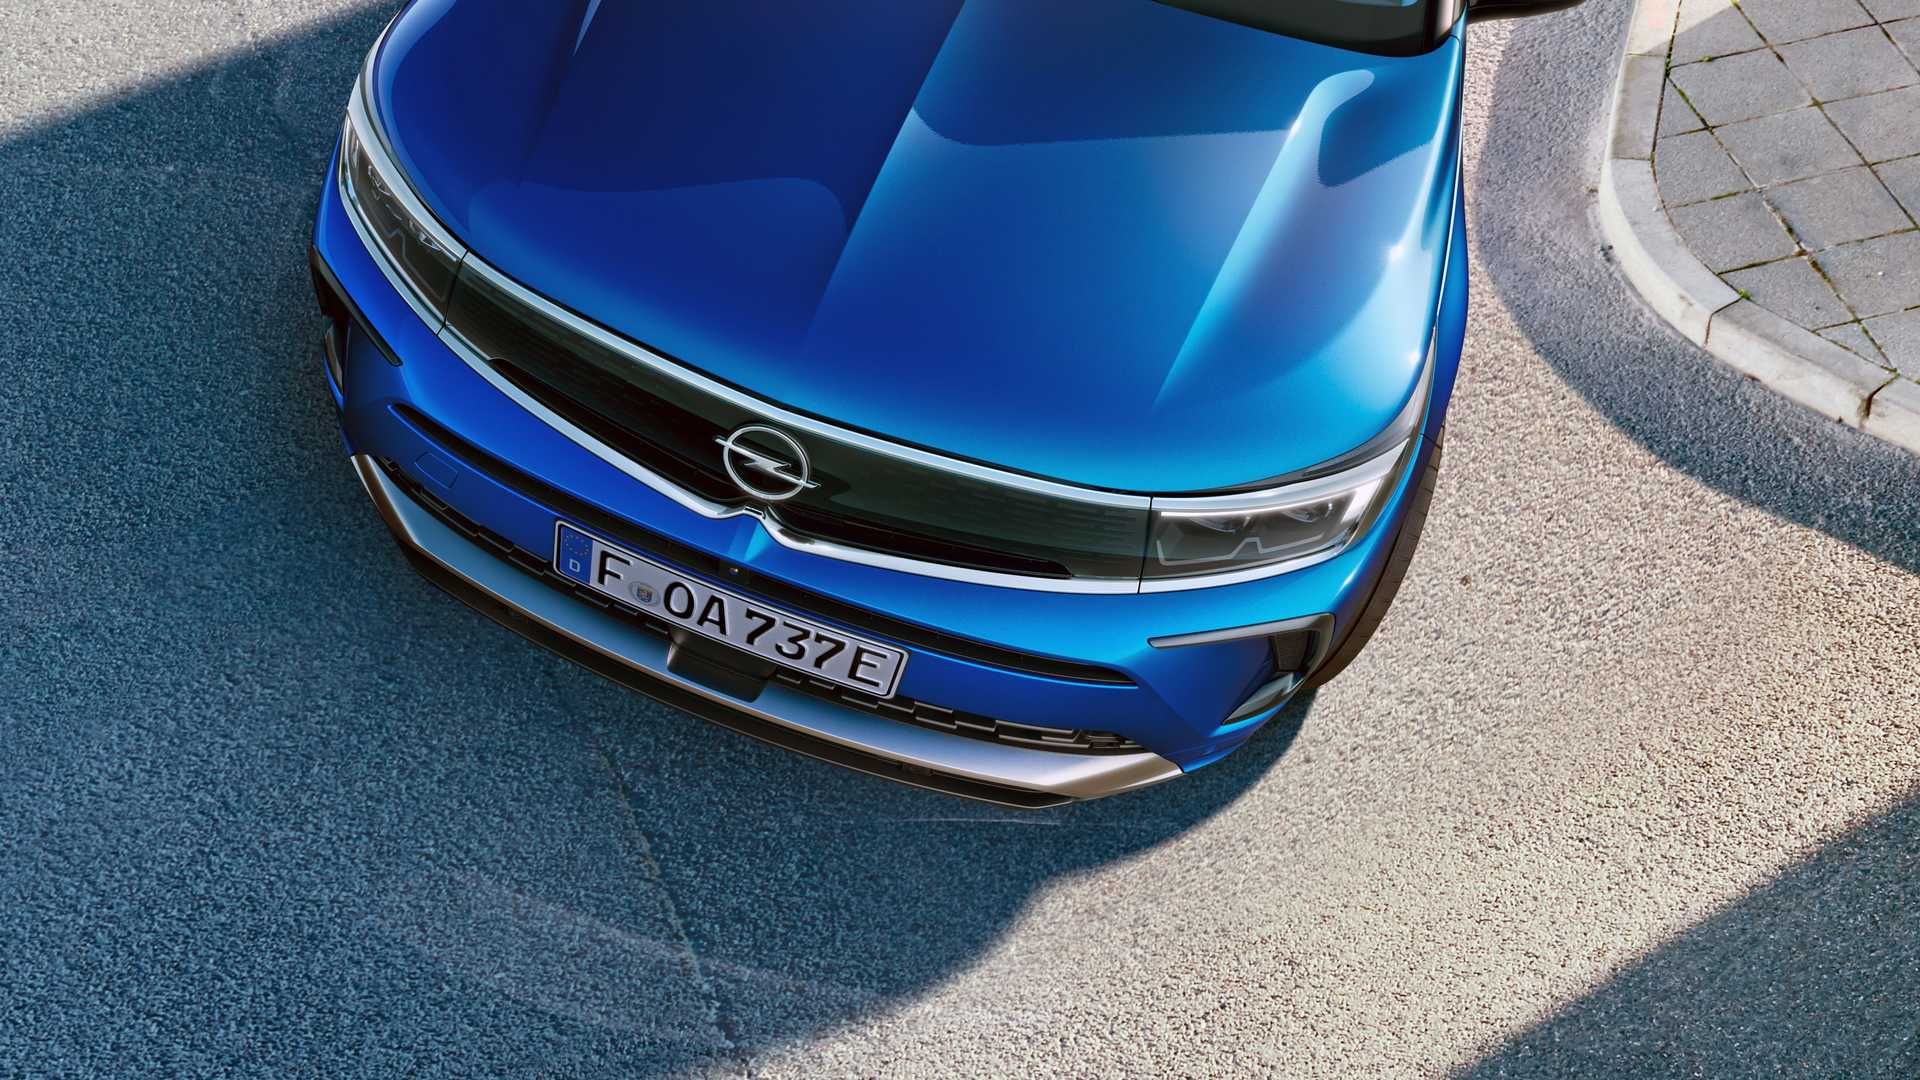 نمای کاپوت فیس لیفت کراس اور اوپل گرندلند 2022 / 2022 Opel Grandland crossover آبی رنگ